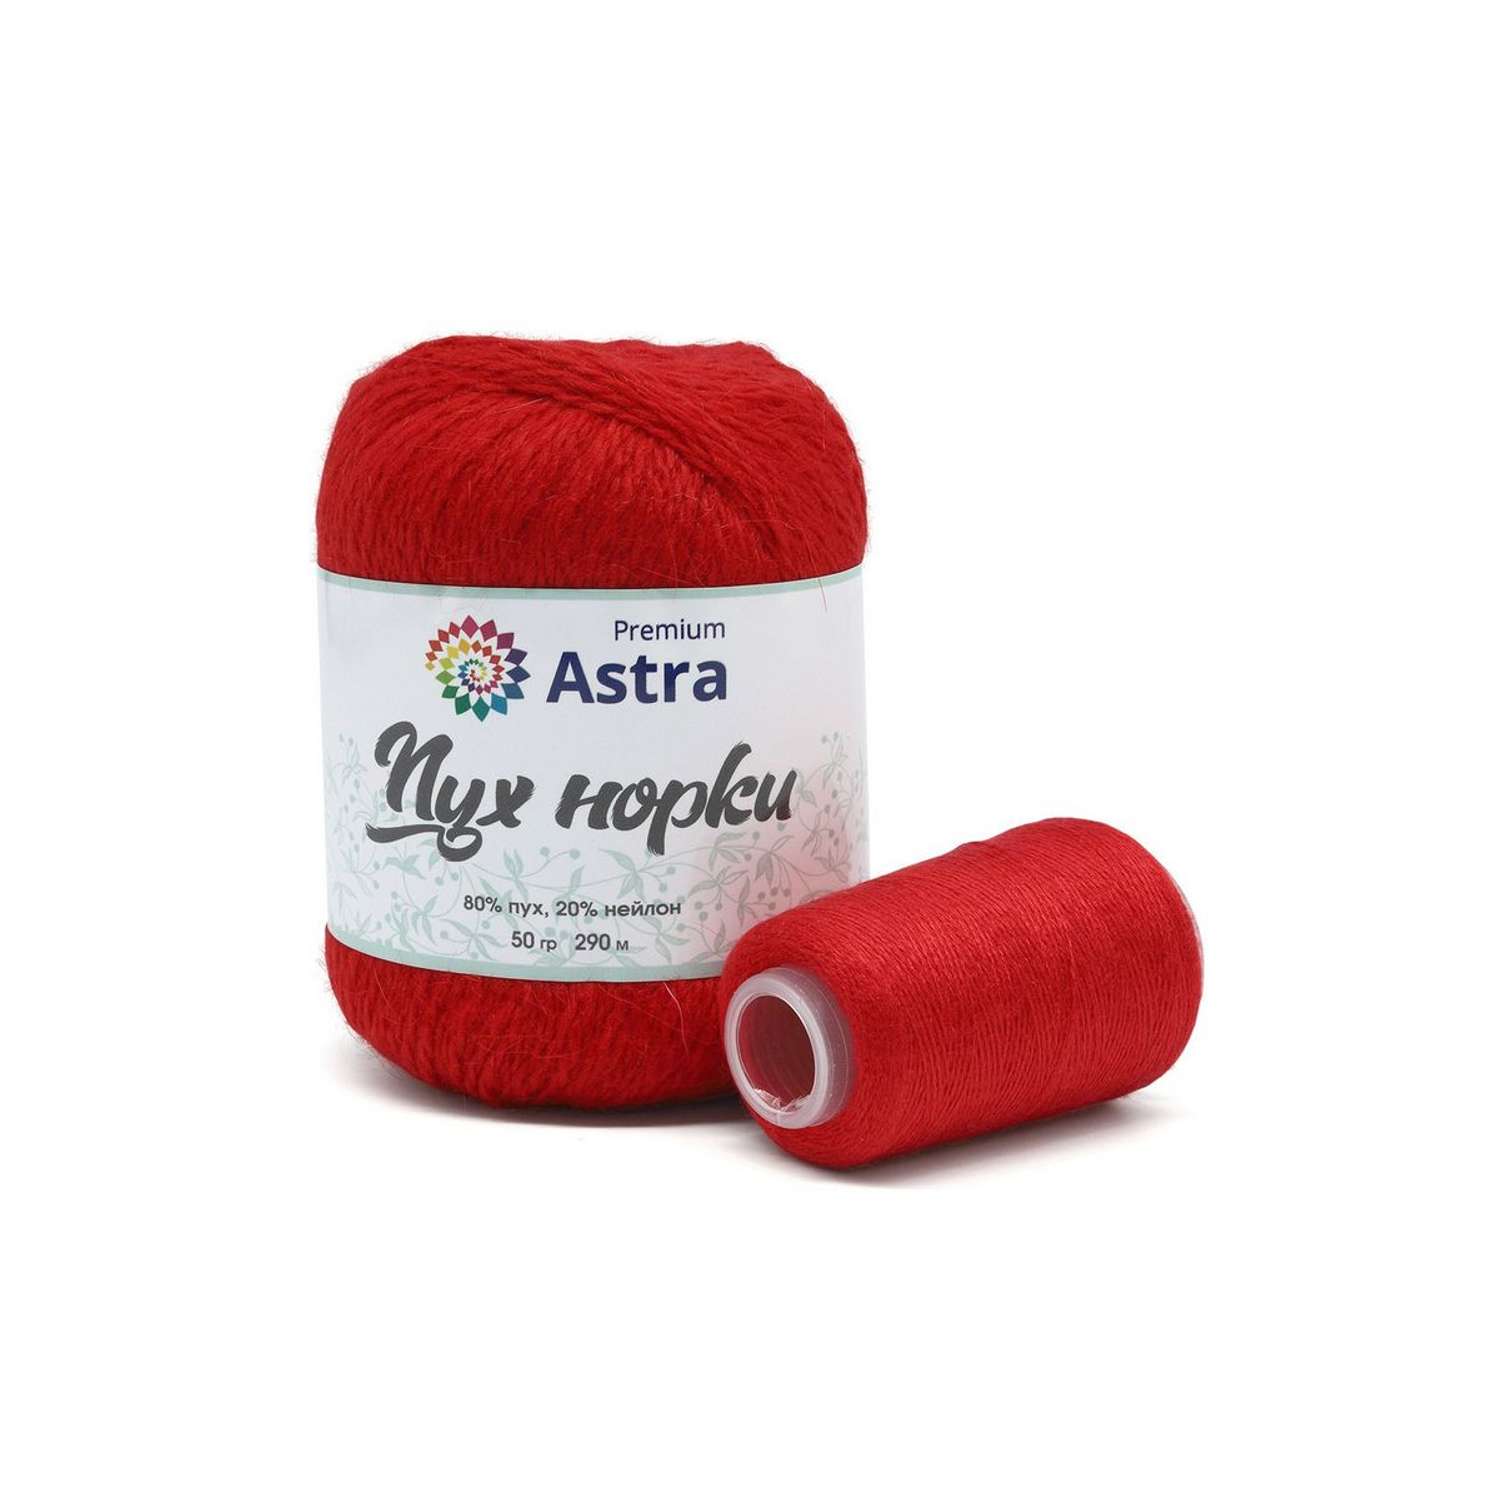 Пряжа Astra Premium Пух норки Mink yarn воздушная с ворсом 50 г 290 м 010 ярко-красный 1 моток - фото 4